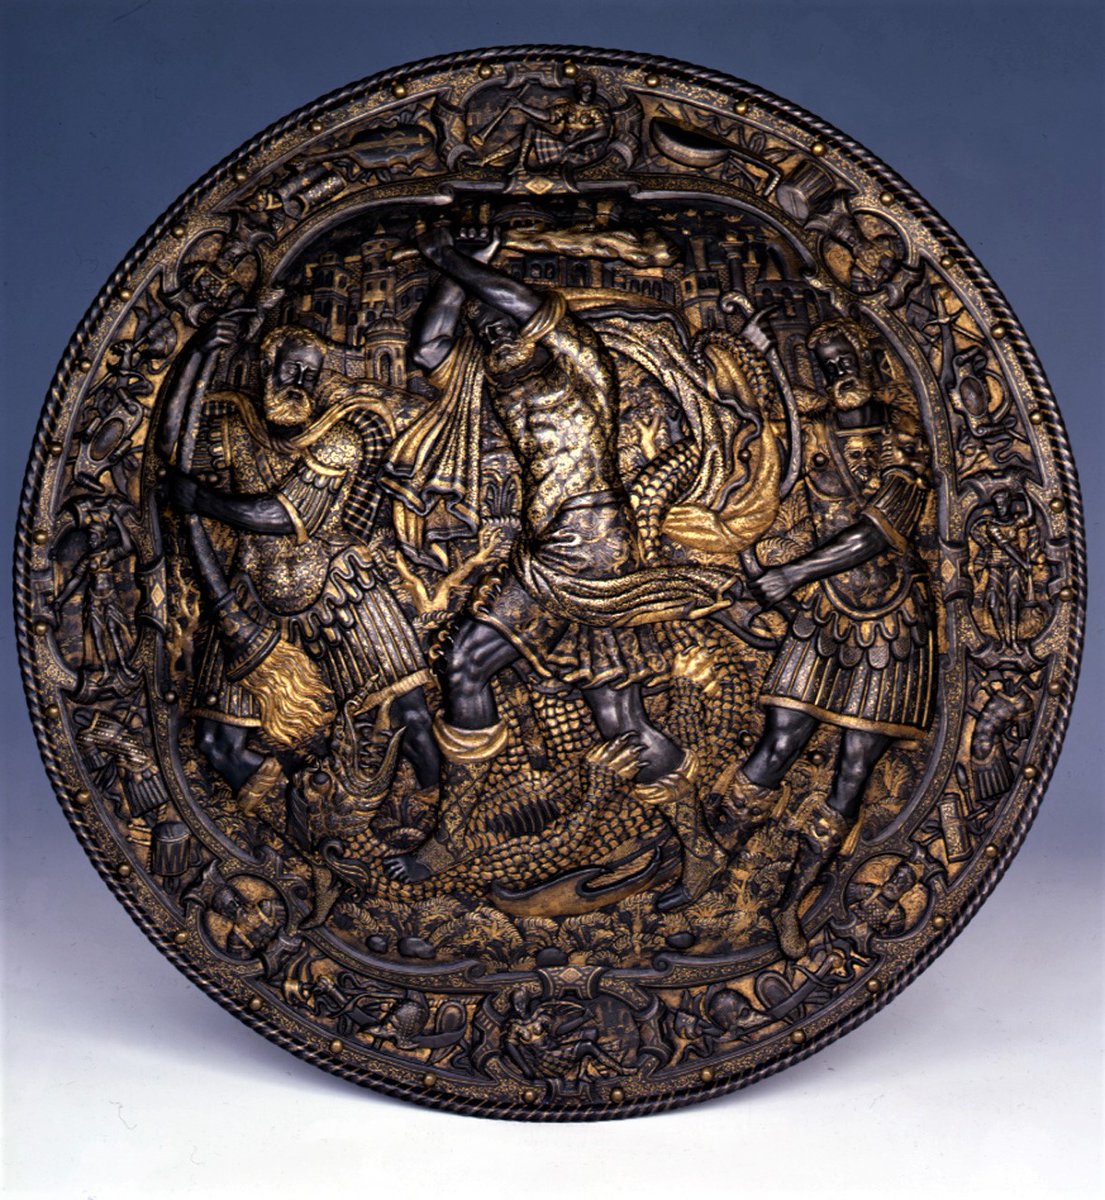 Ambito milanese, Rotella da pompa con Ercole che sconfigge l'Idra di Lerna (1560-1570 circa; ferro, diametro 57 cm; Torino, Musei Reali, Armeria Reale)